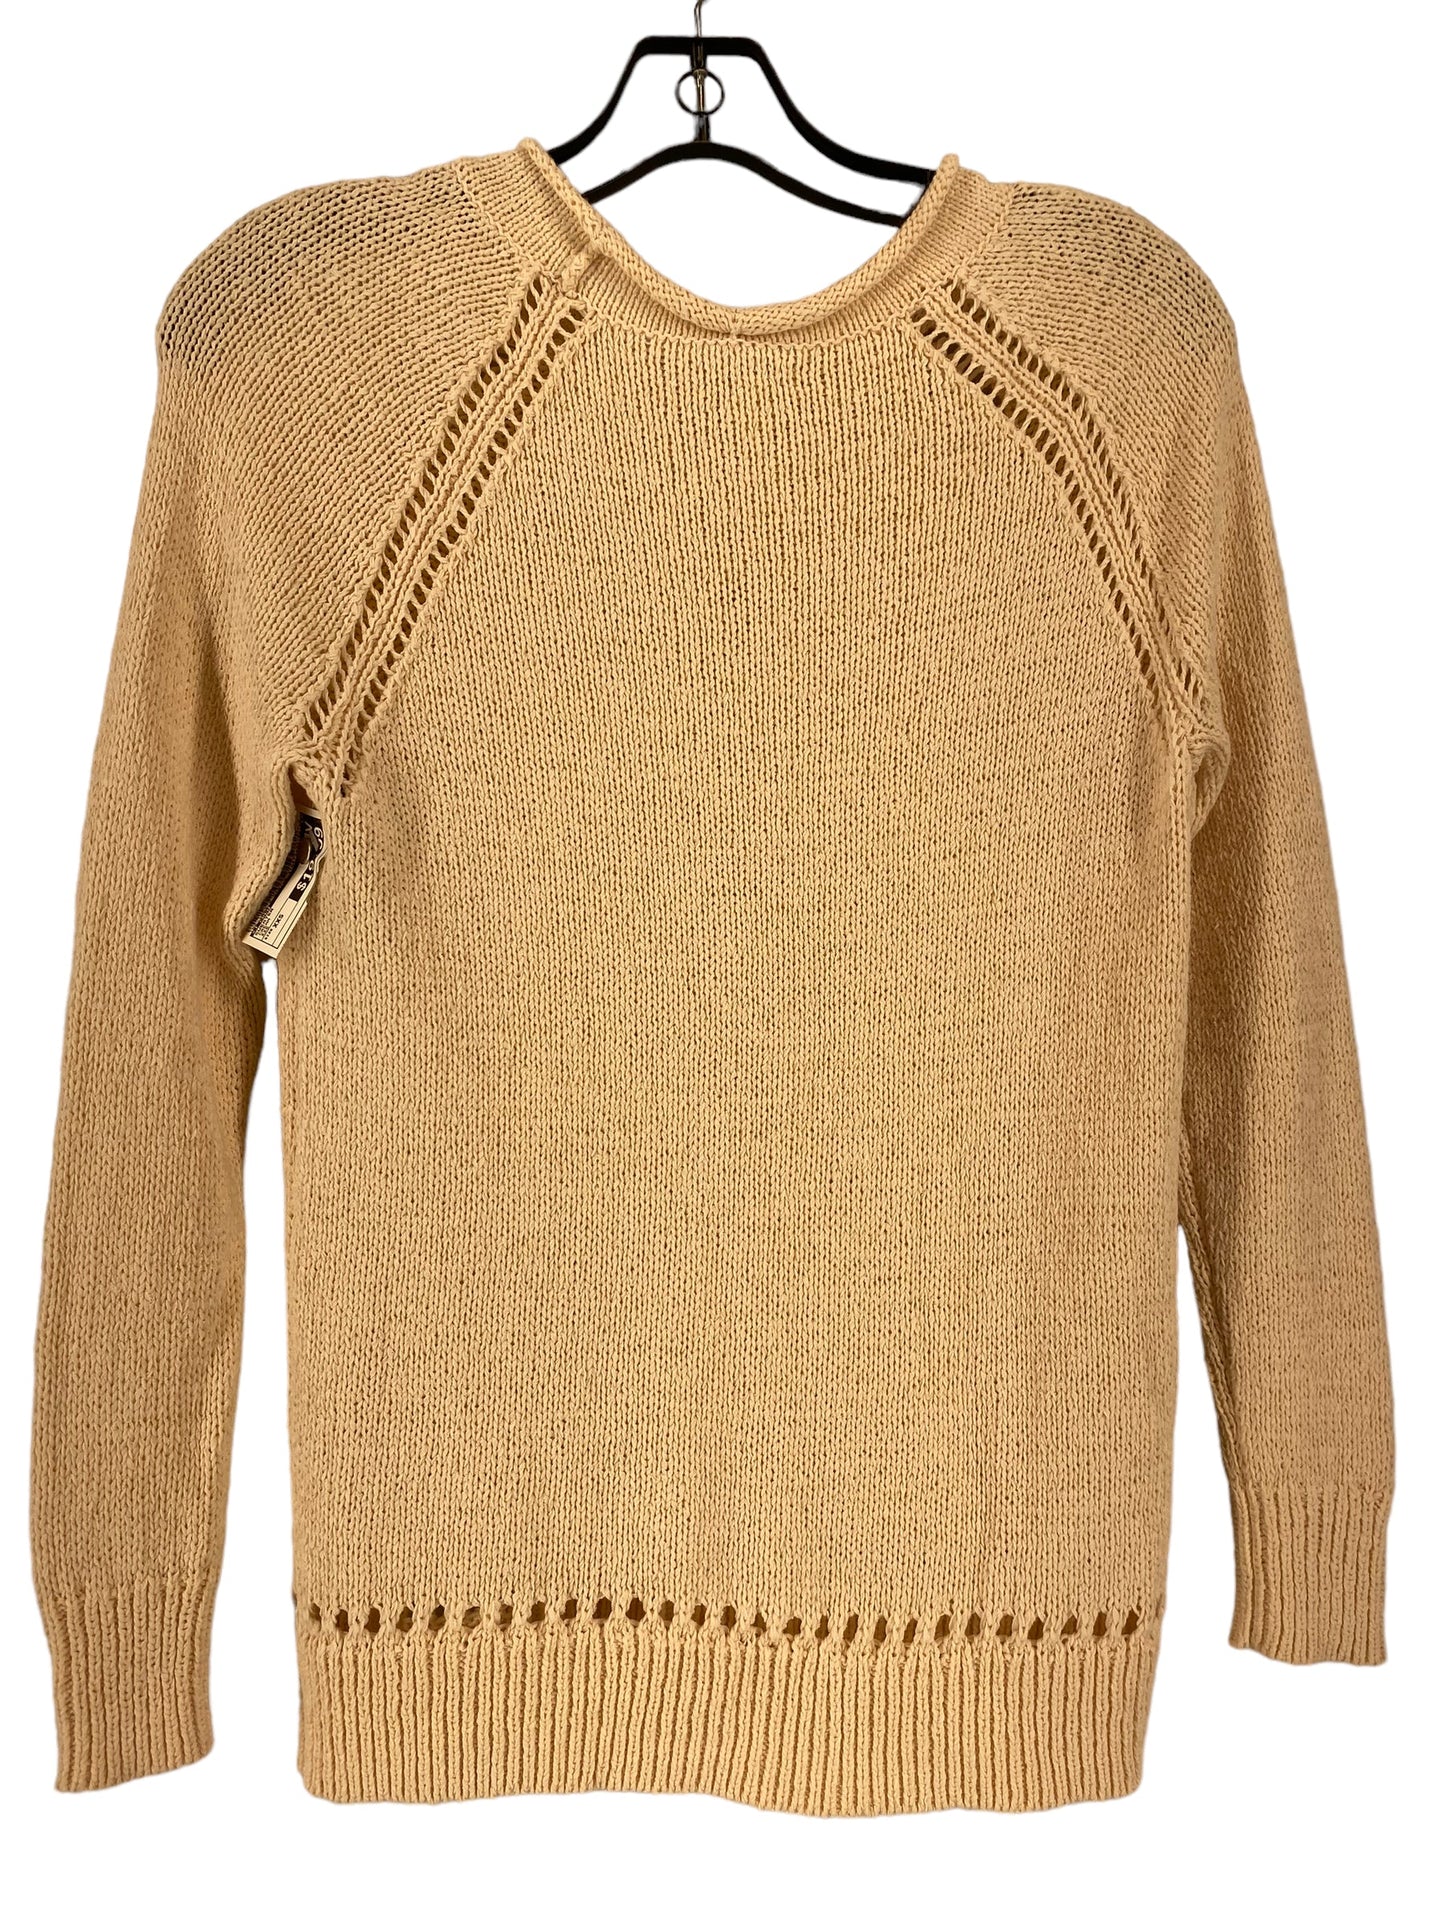 Sweater By J Crew  Size: Xxs